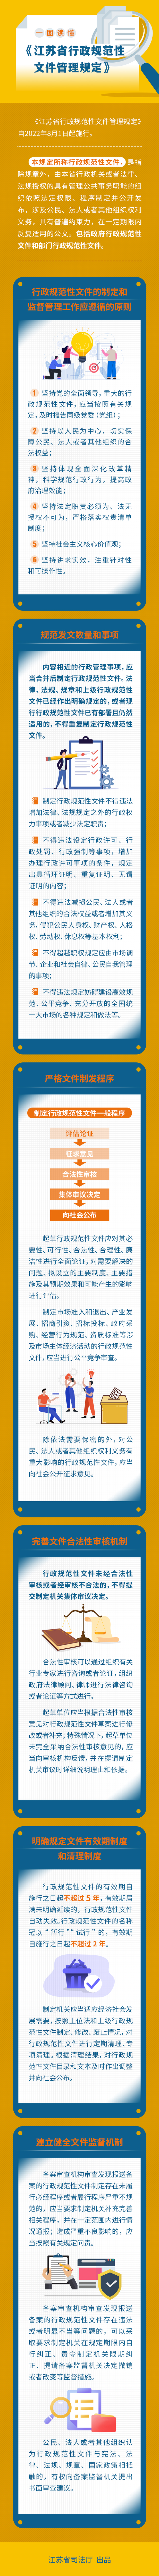 一图读懂《江苏省行政规范性文件管理规定》.jpg